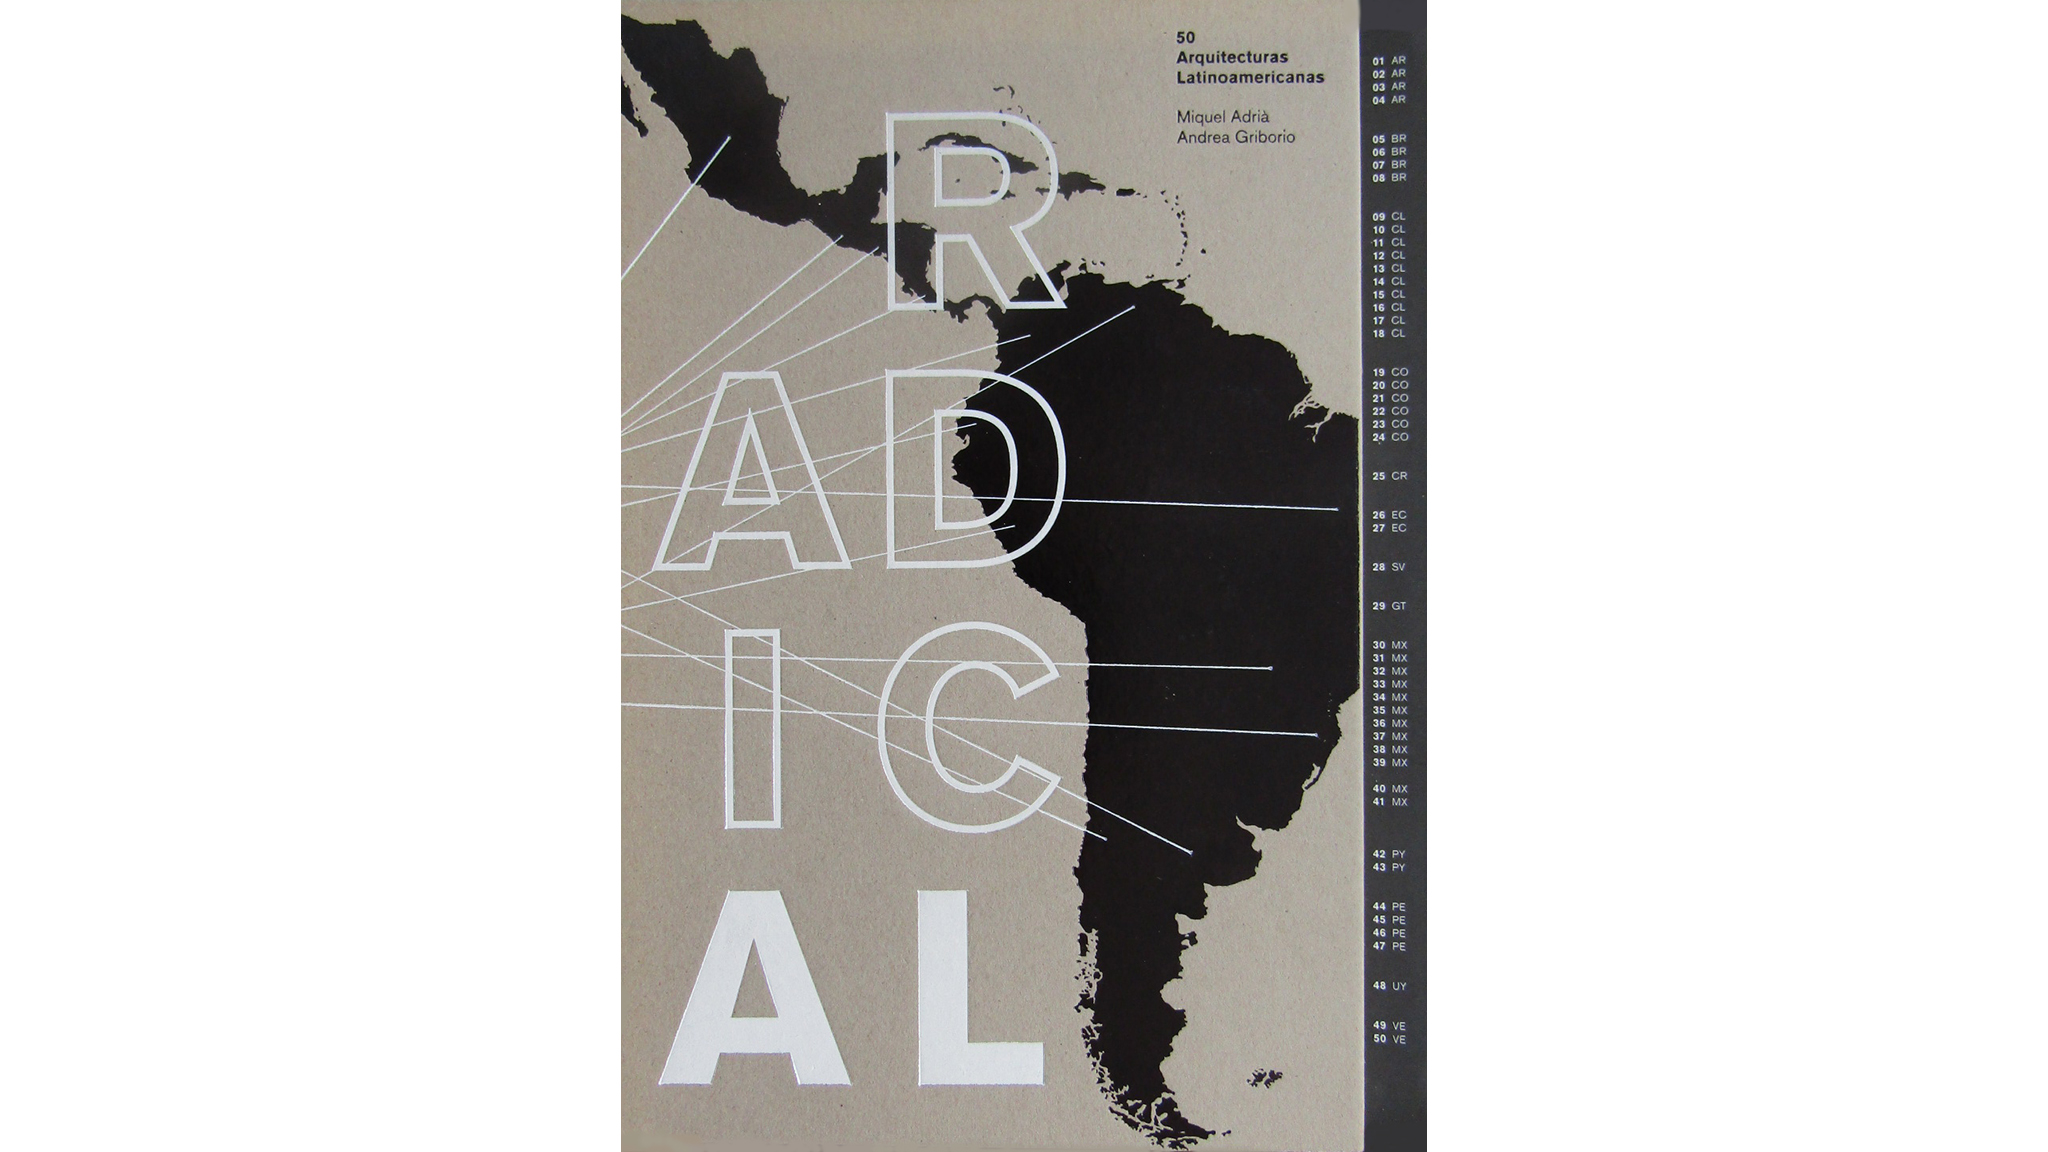 Radical 50 Arquitecturas Latinoamericanas